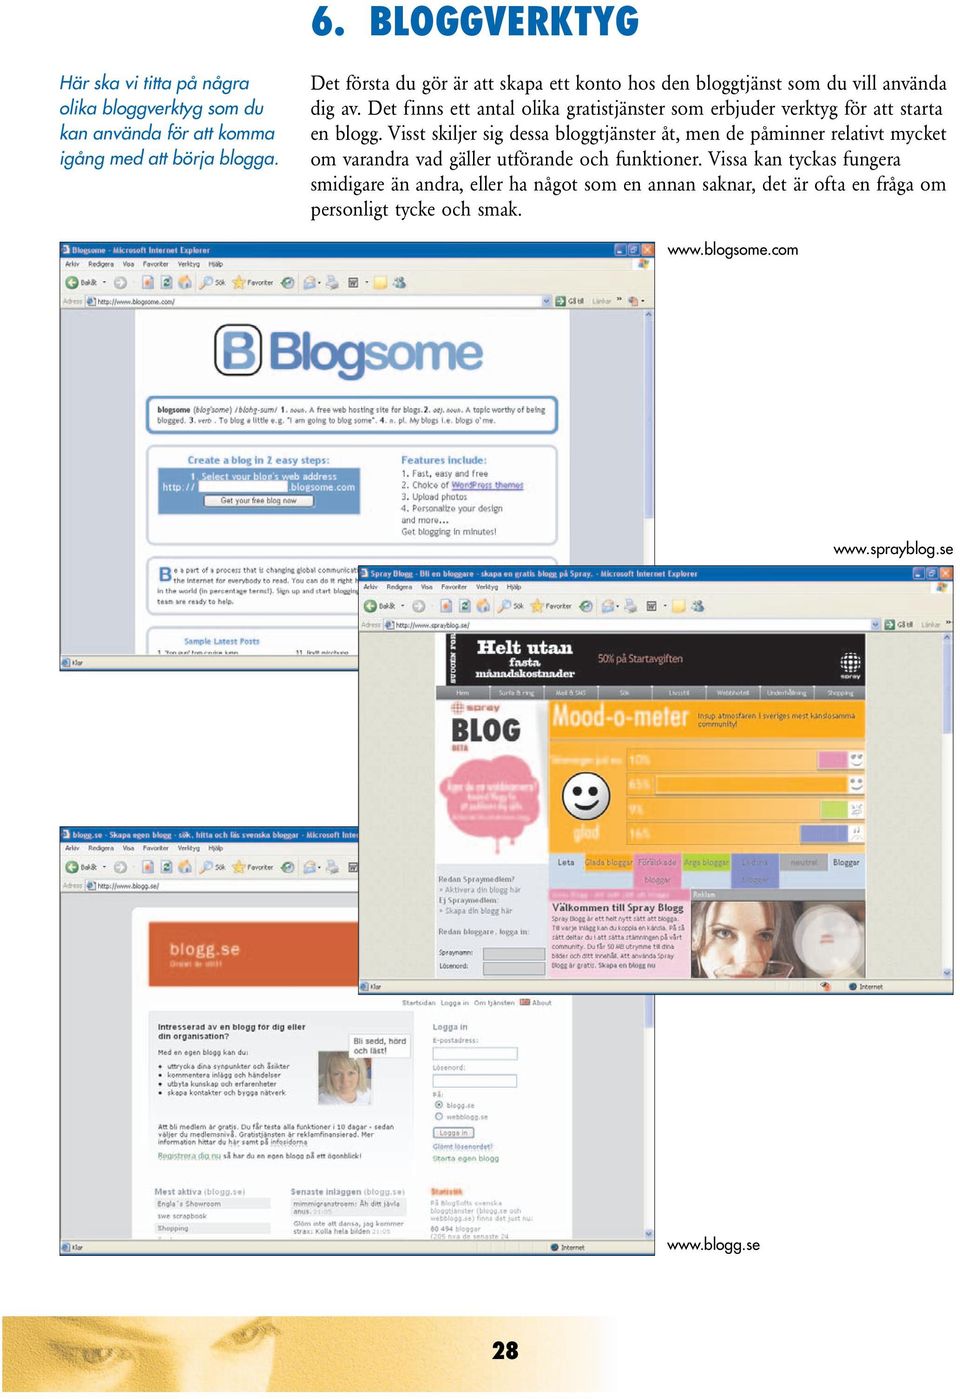 Det finns ett antal olika gratistjänster som erbjuder verktyg för att starta en blogg.